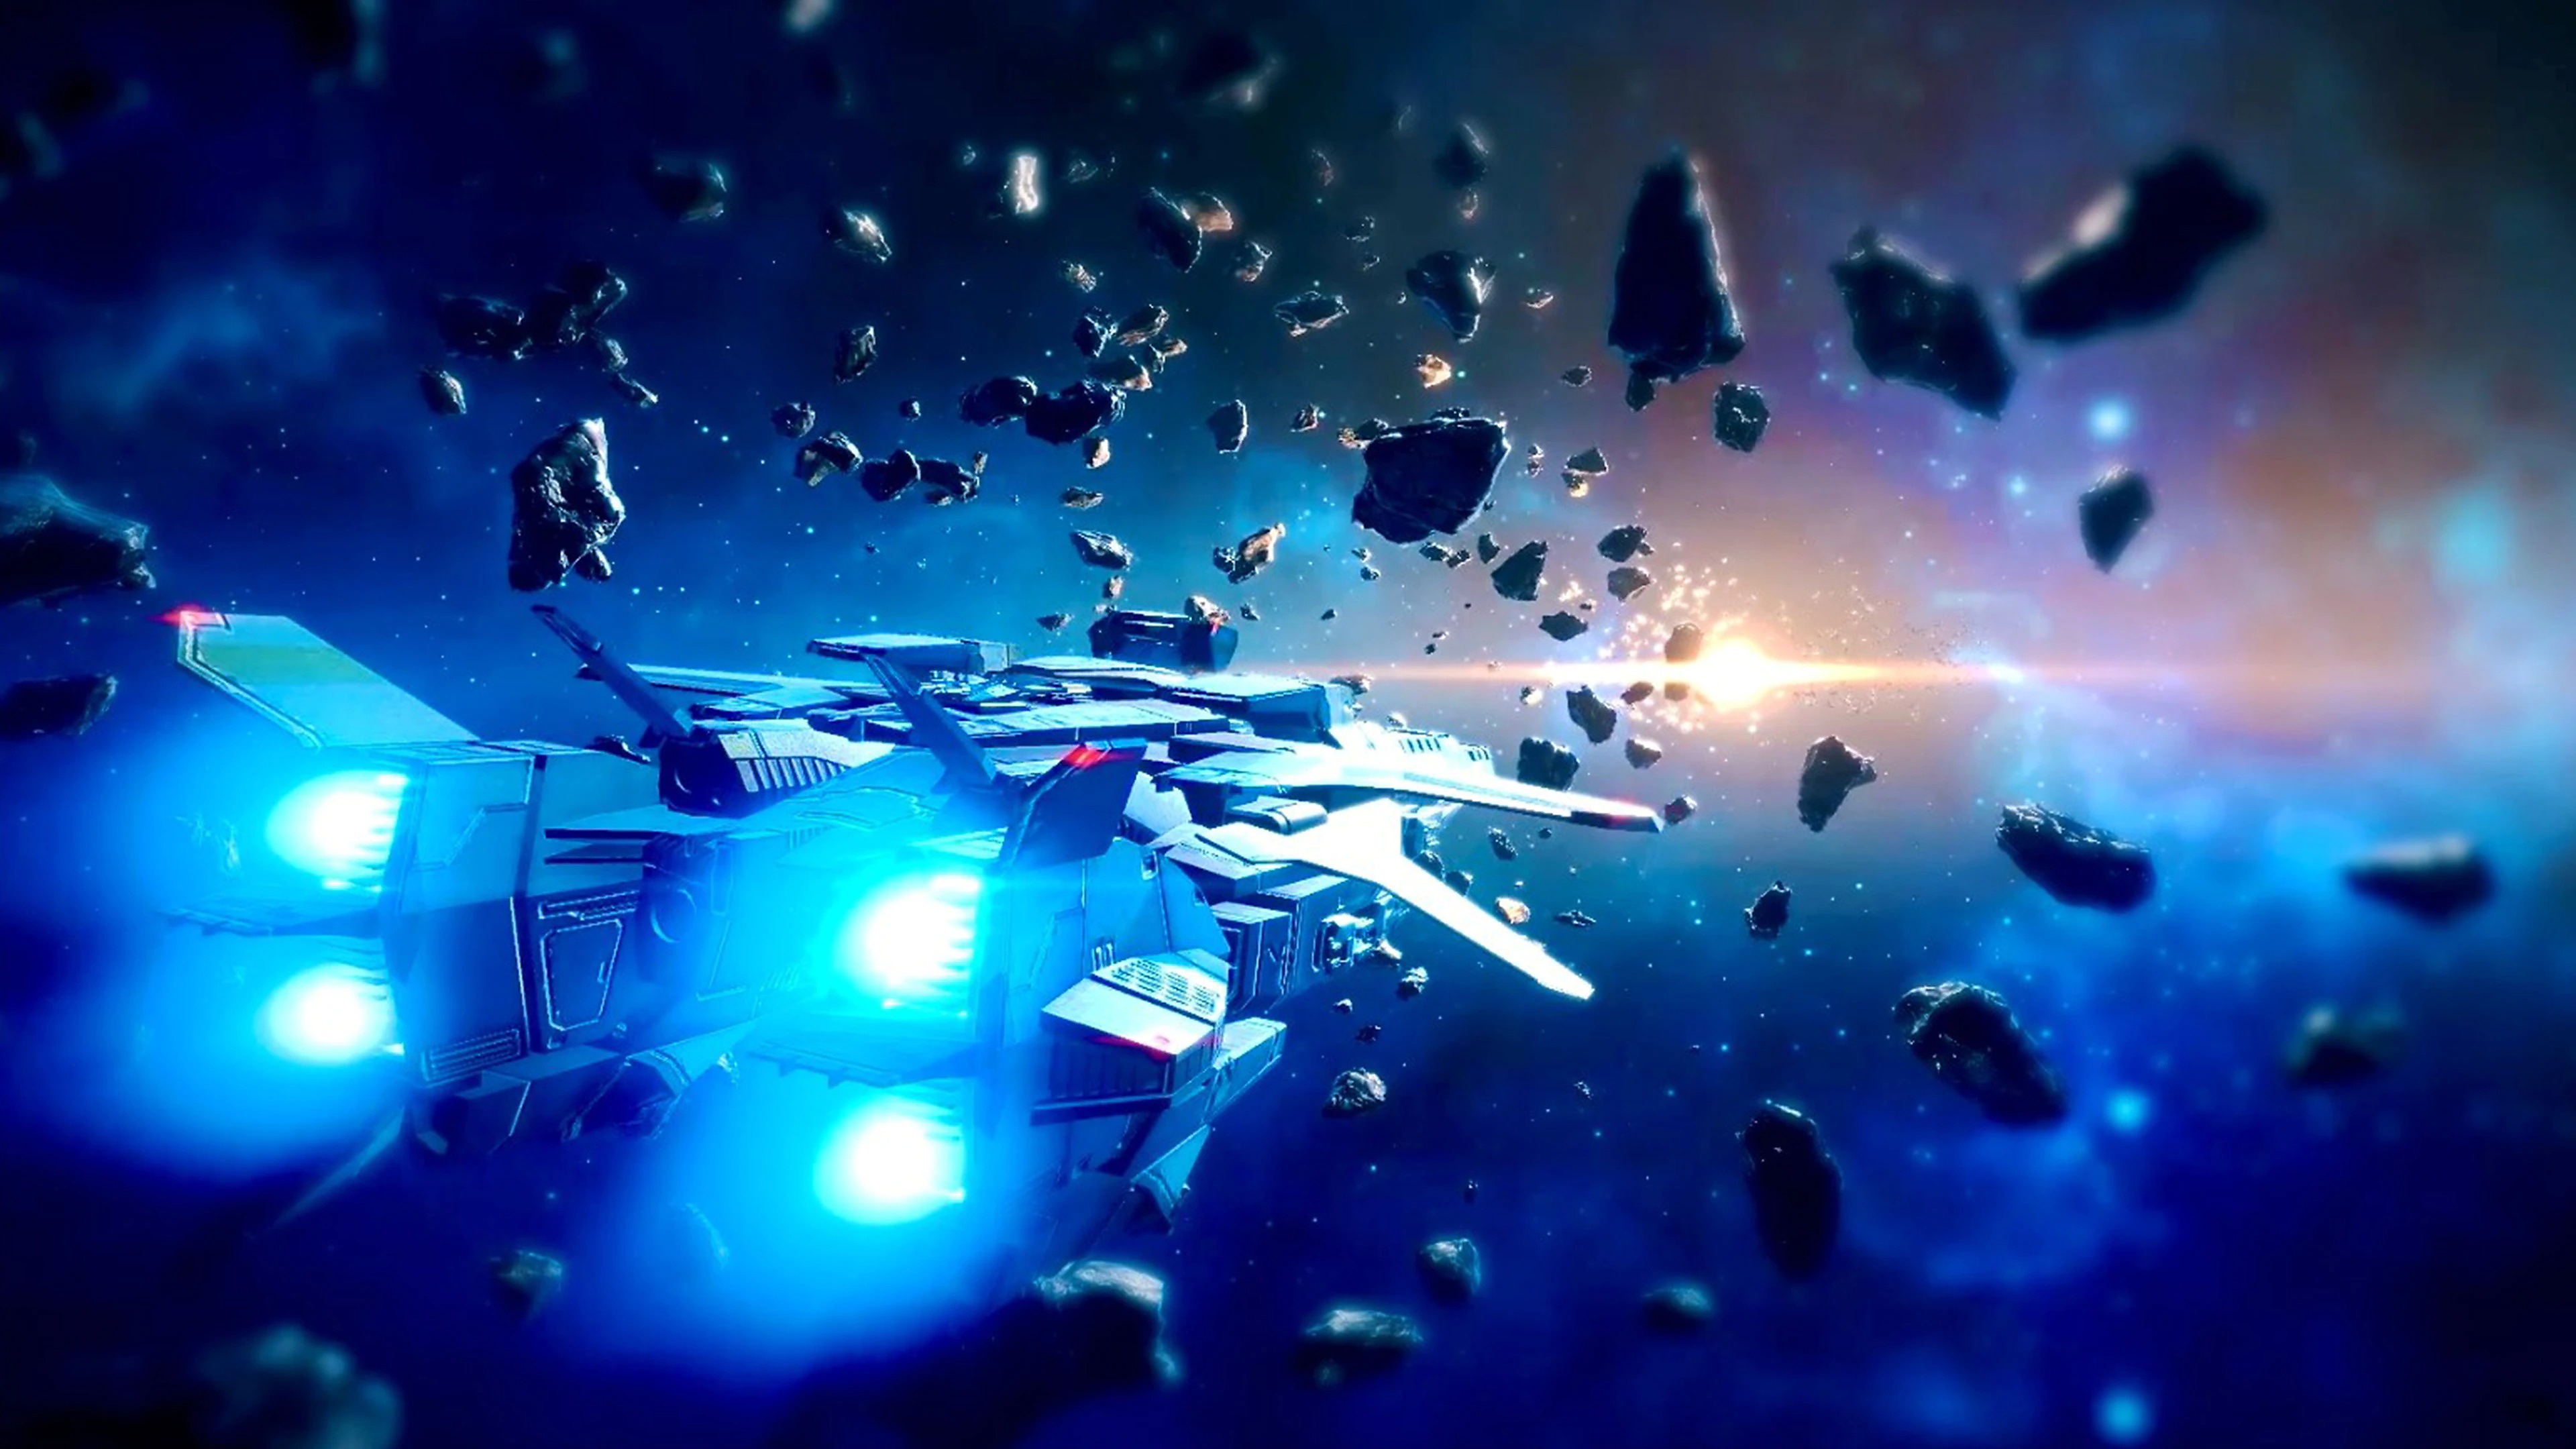 Relayer - Istantanea della schermata che mostra una nave spaziale che vola nello spazio tra gli asteroidi